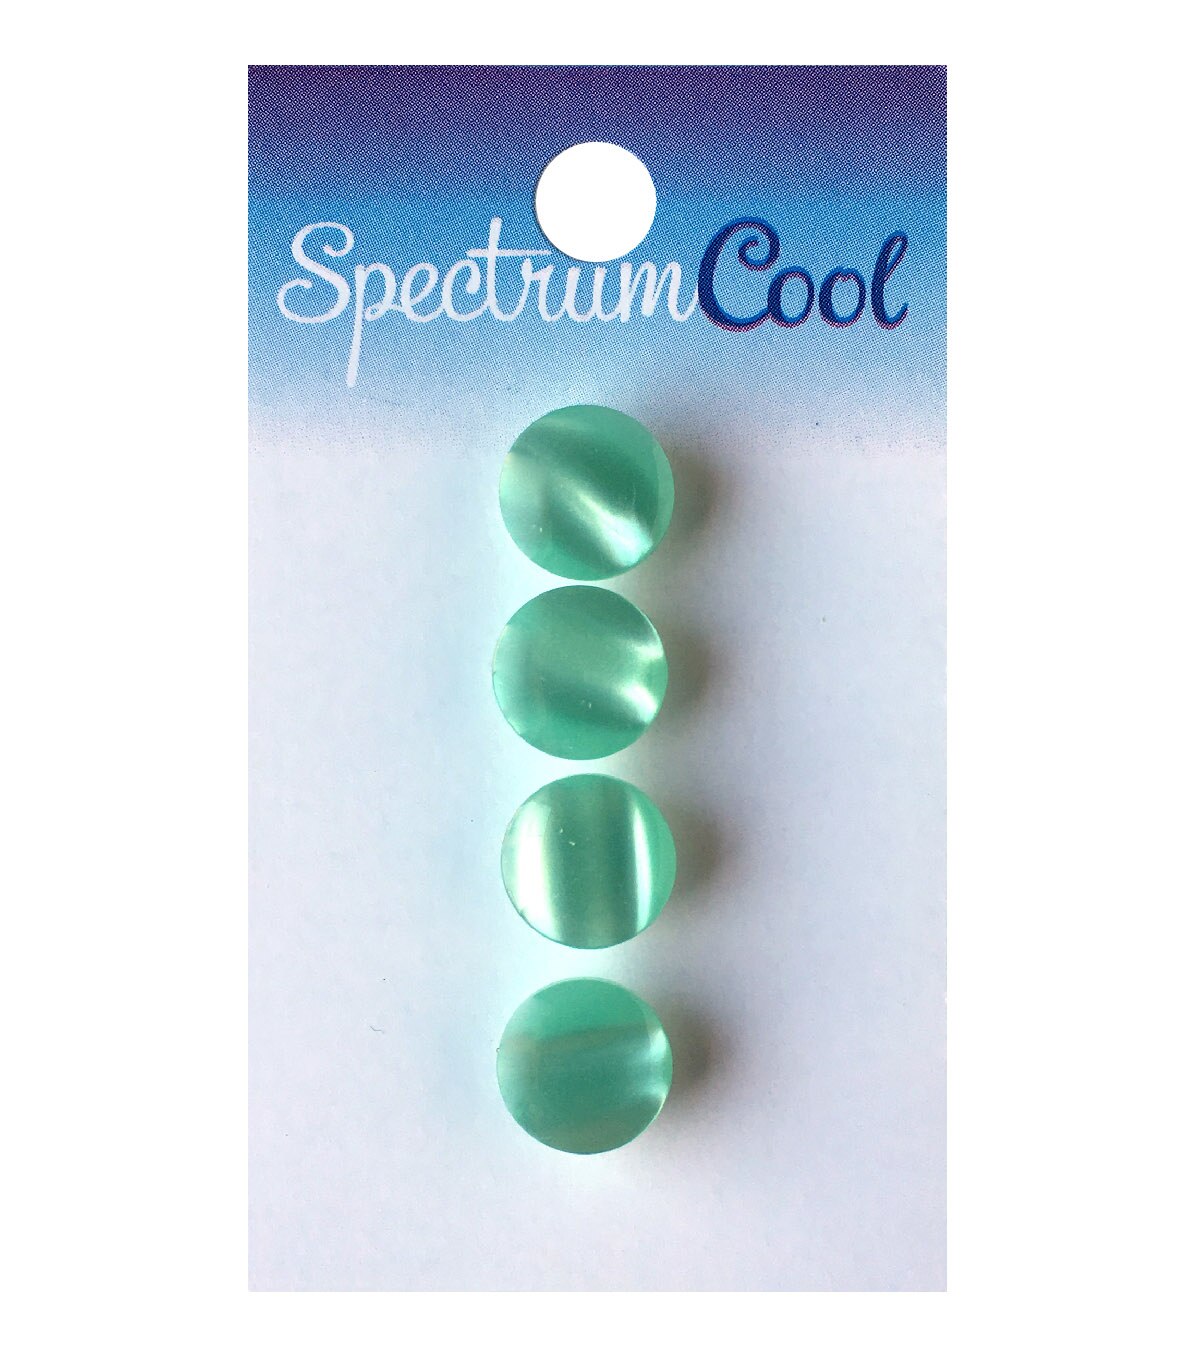 Spectrum Cool 7/16 Mint Green Shank Buttons 4pk | JOANN